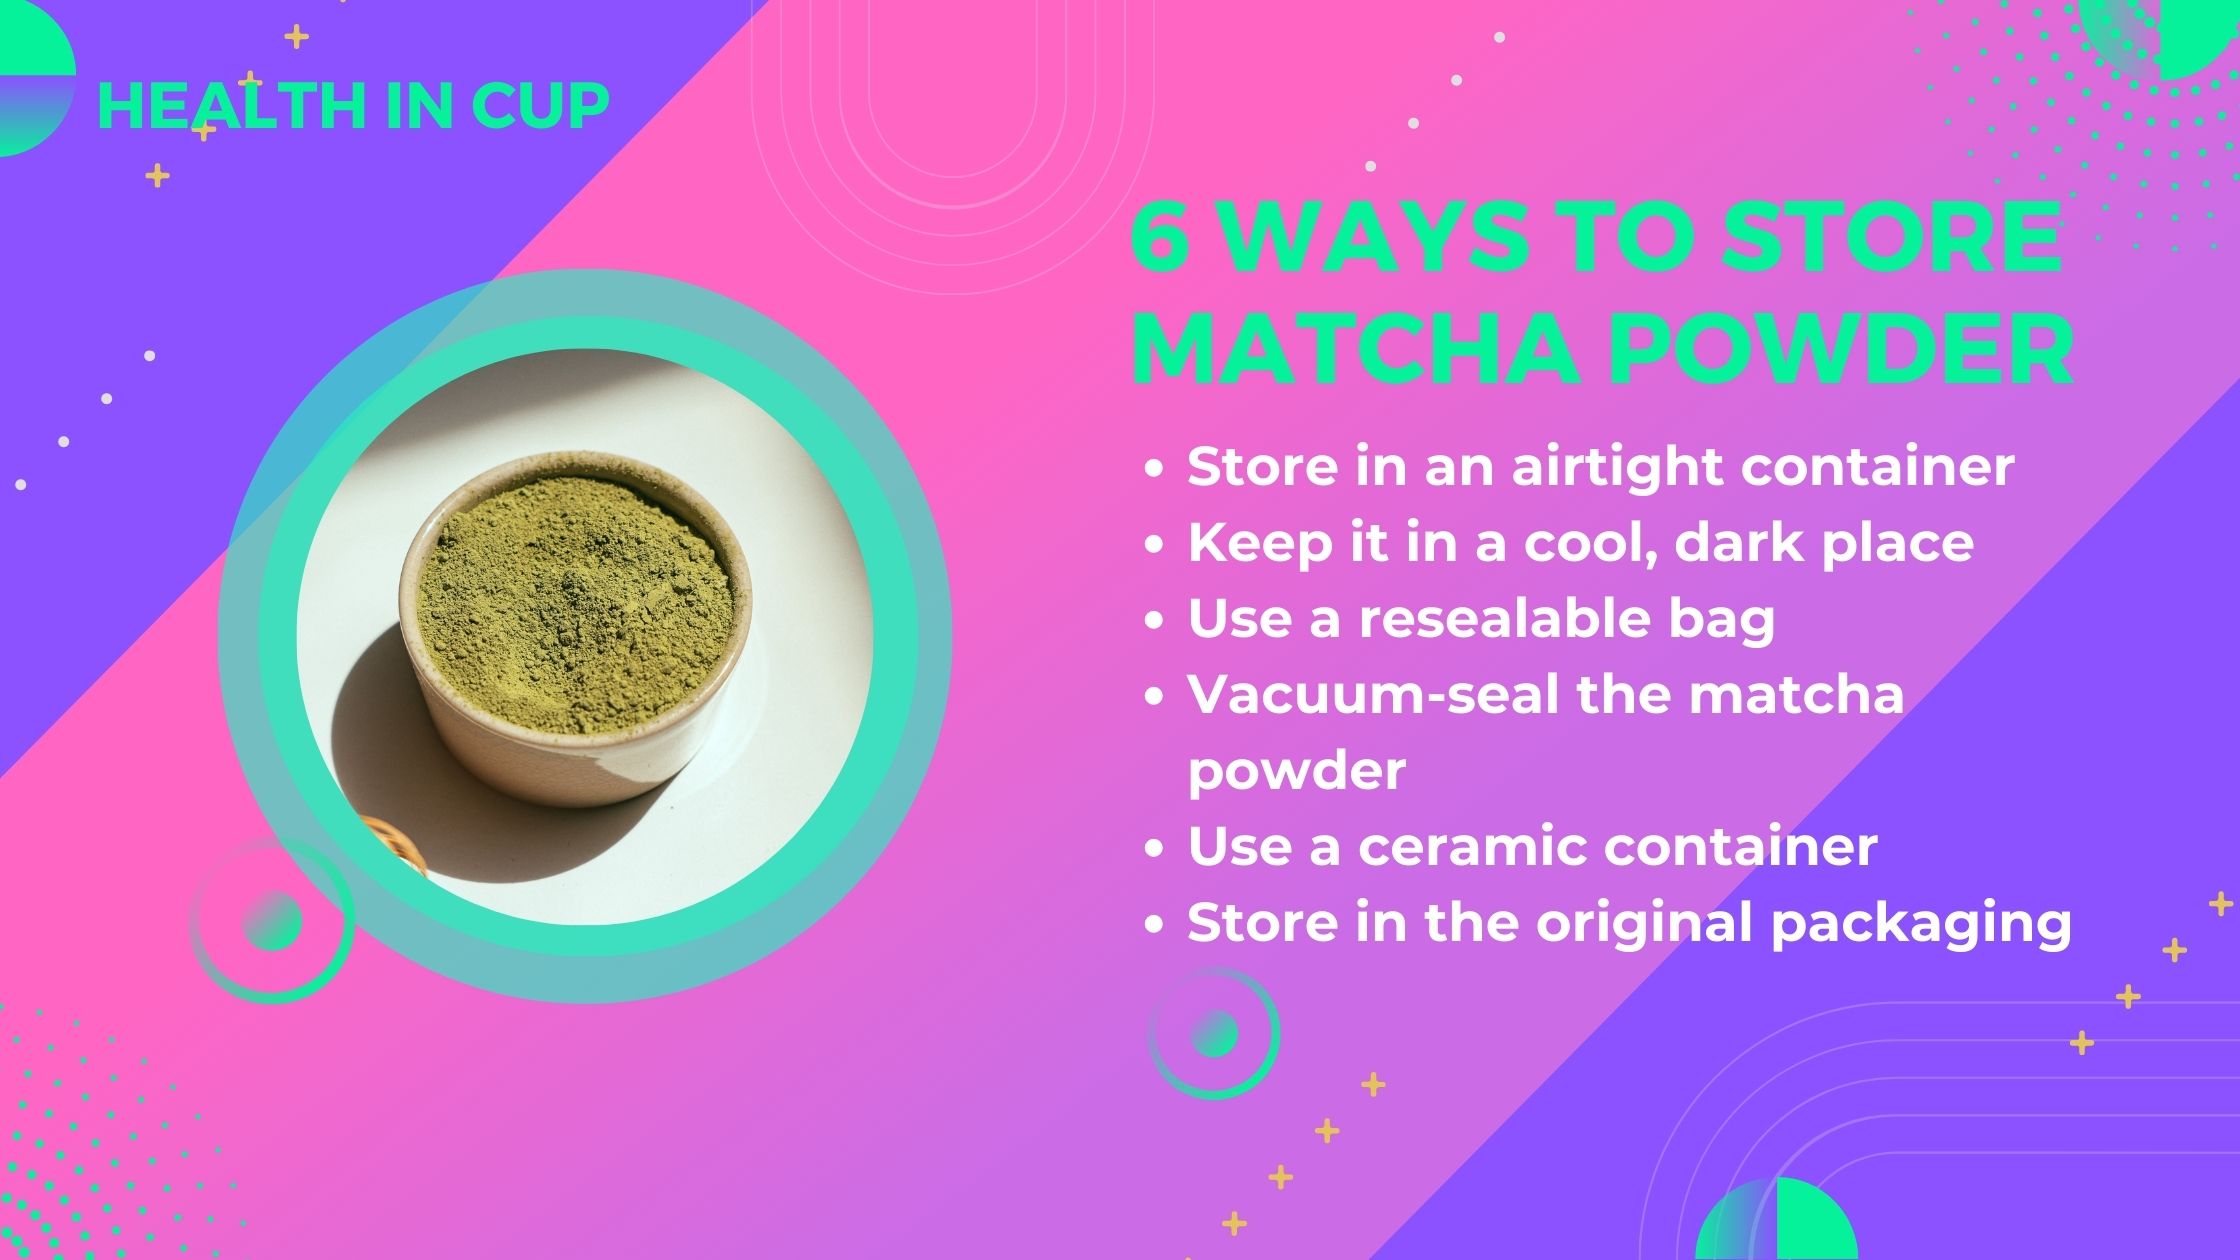 How to store matcha powder